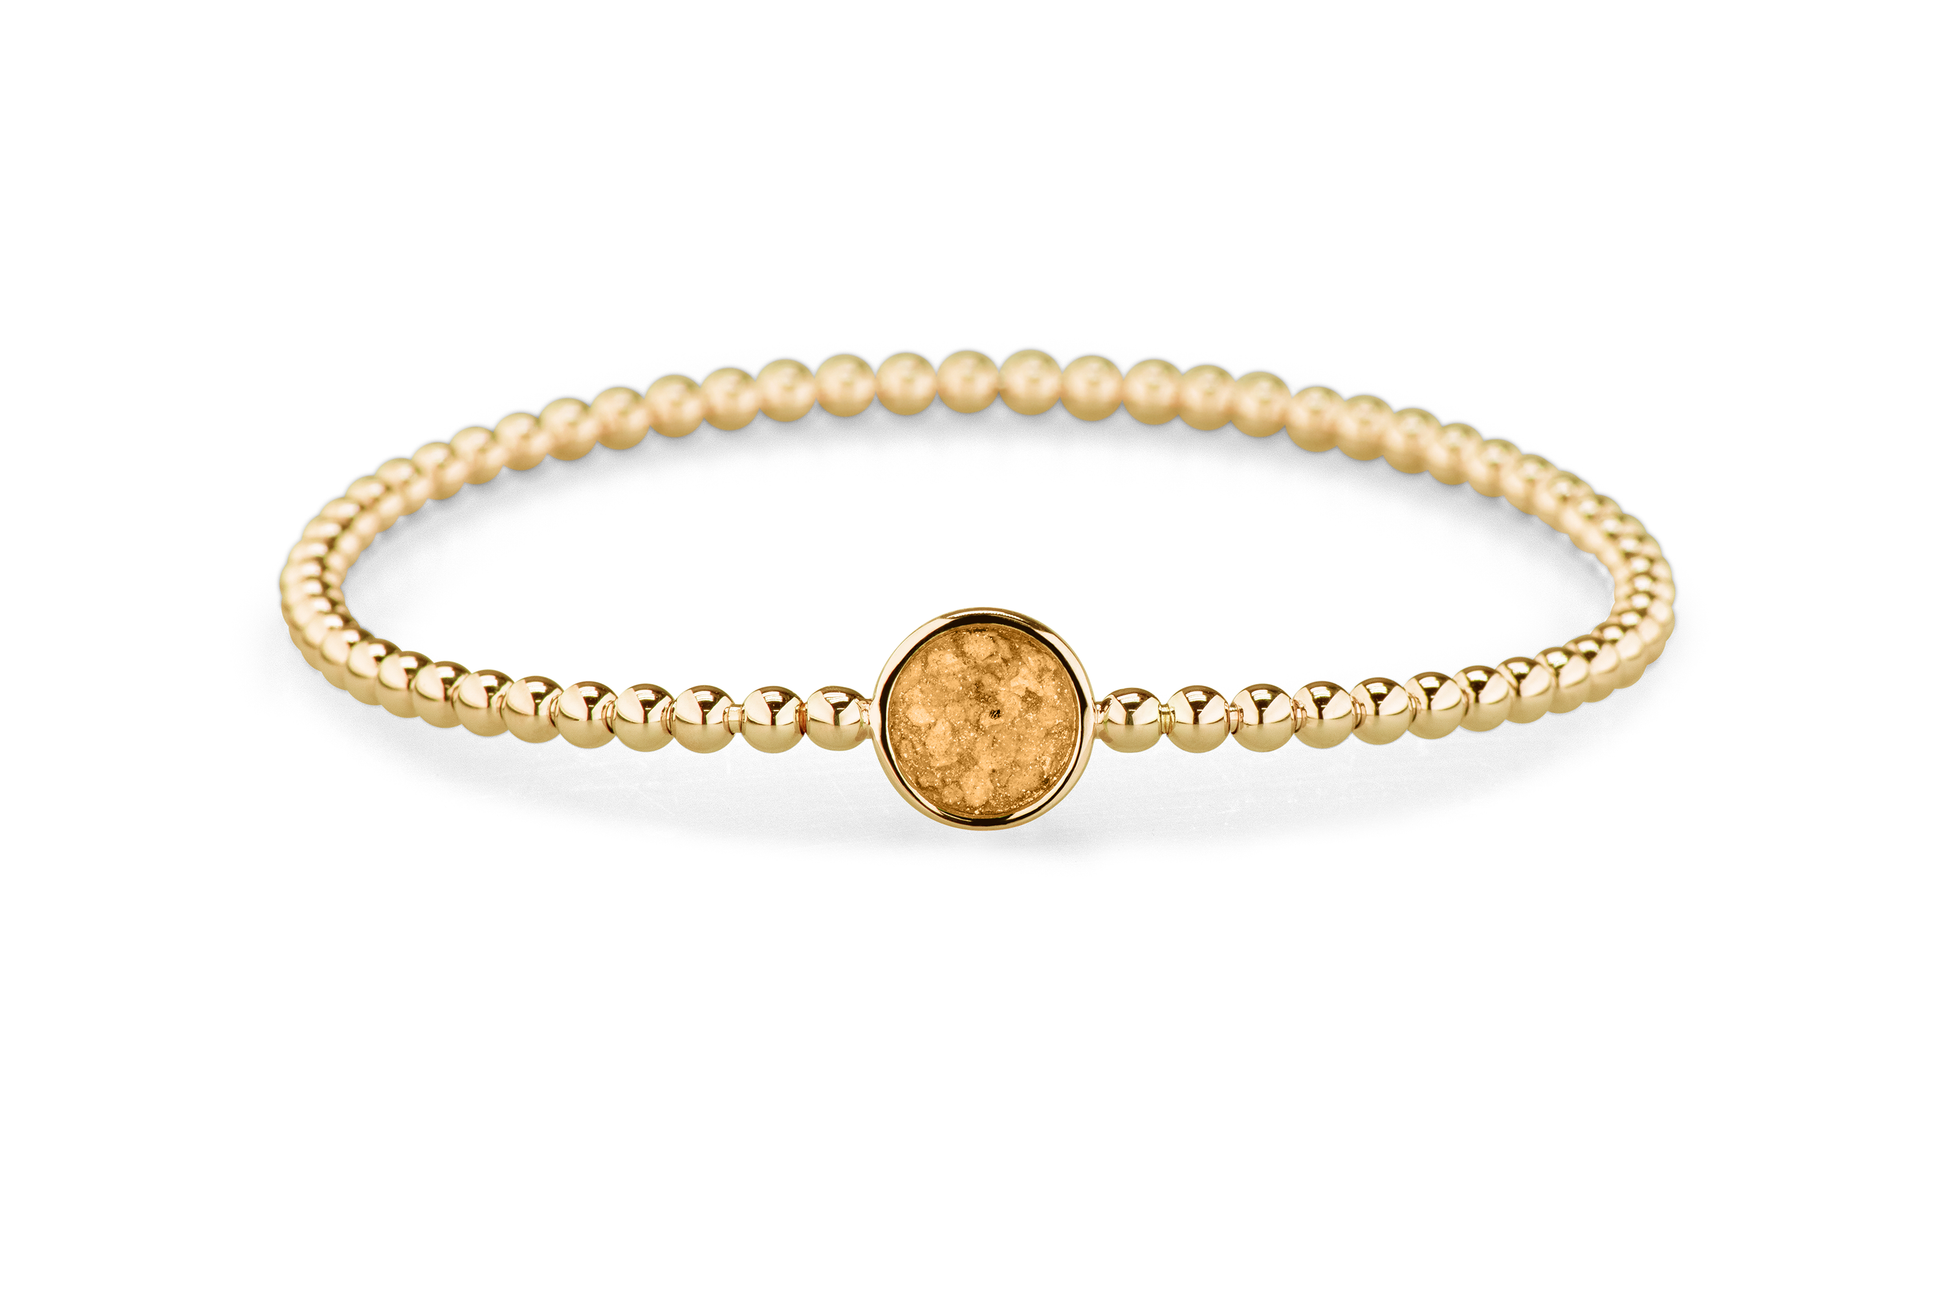 Flexibele as armband met rondje als compartiment voor as of haar, gedenksieraden. Gold